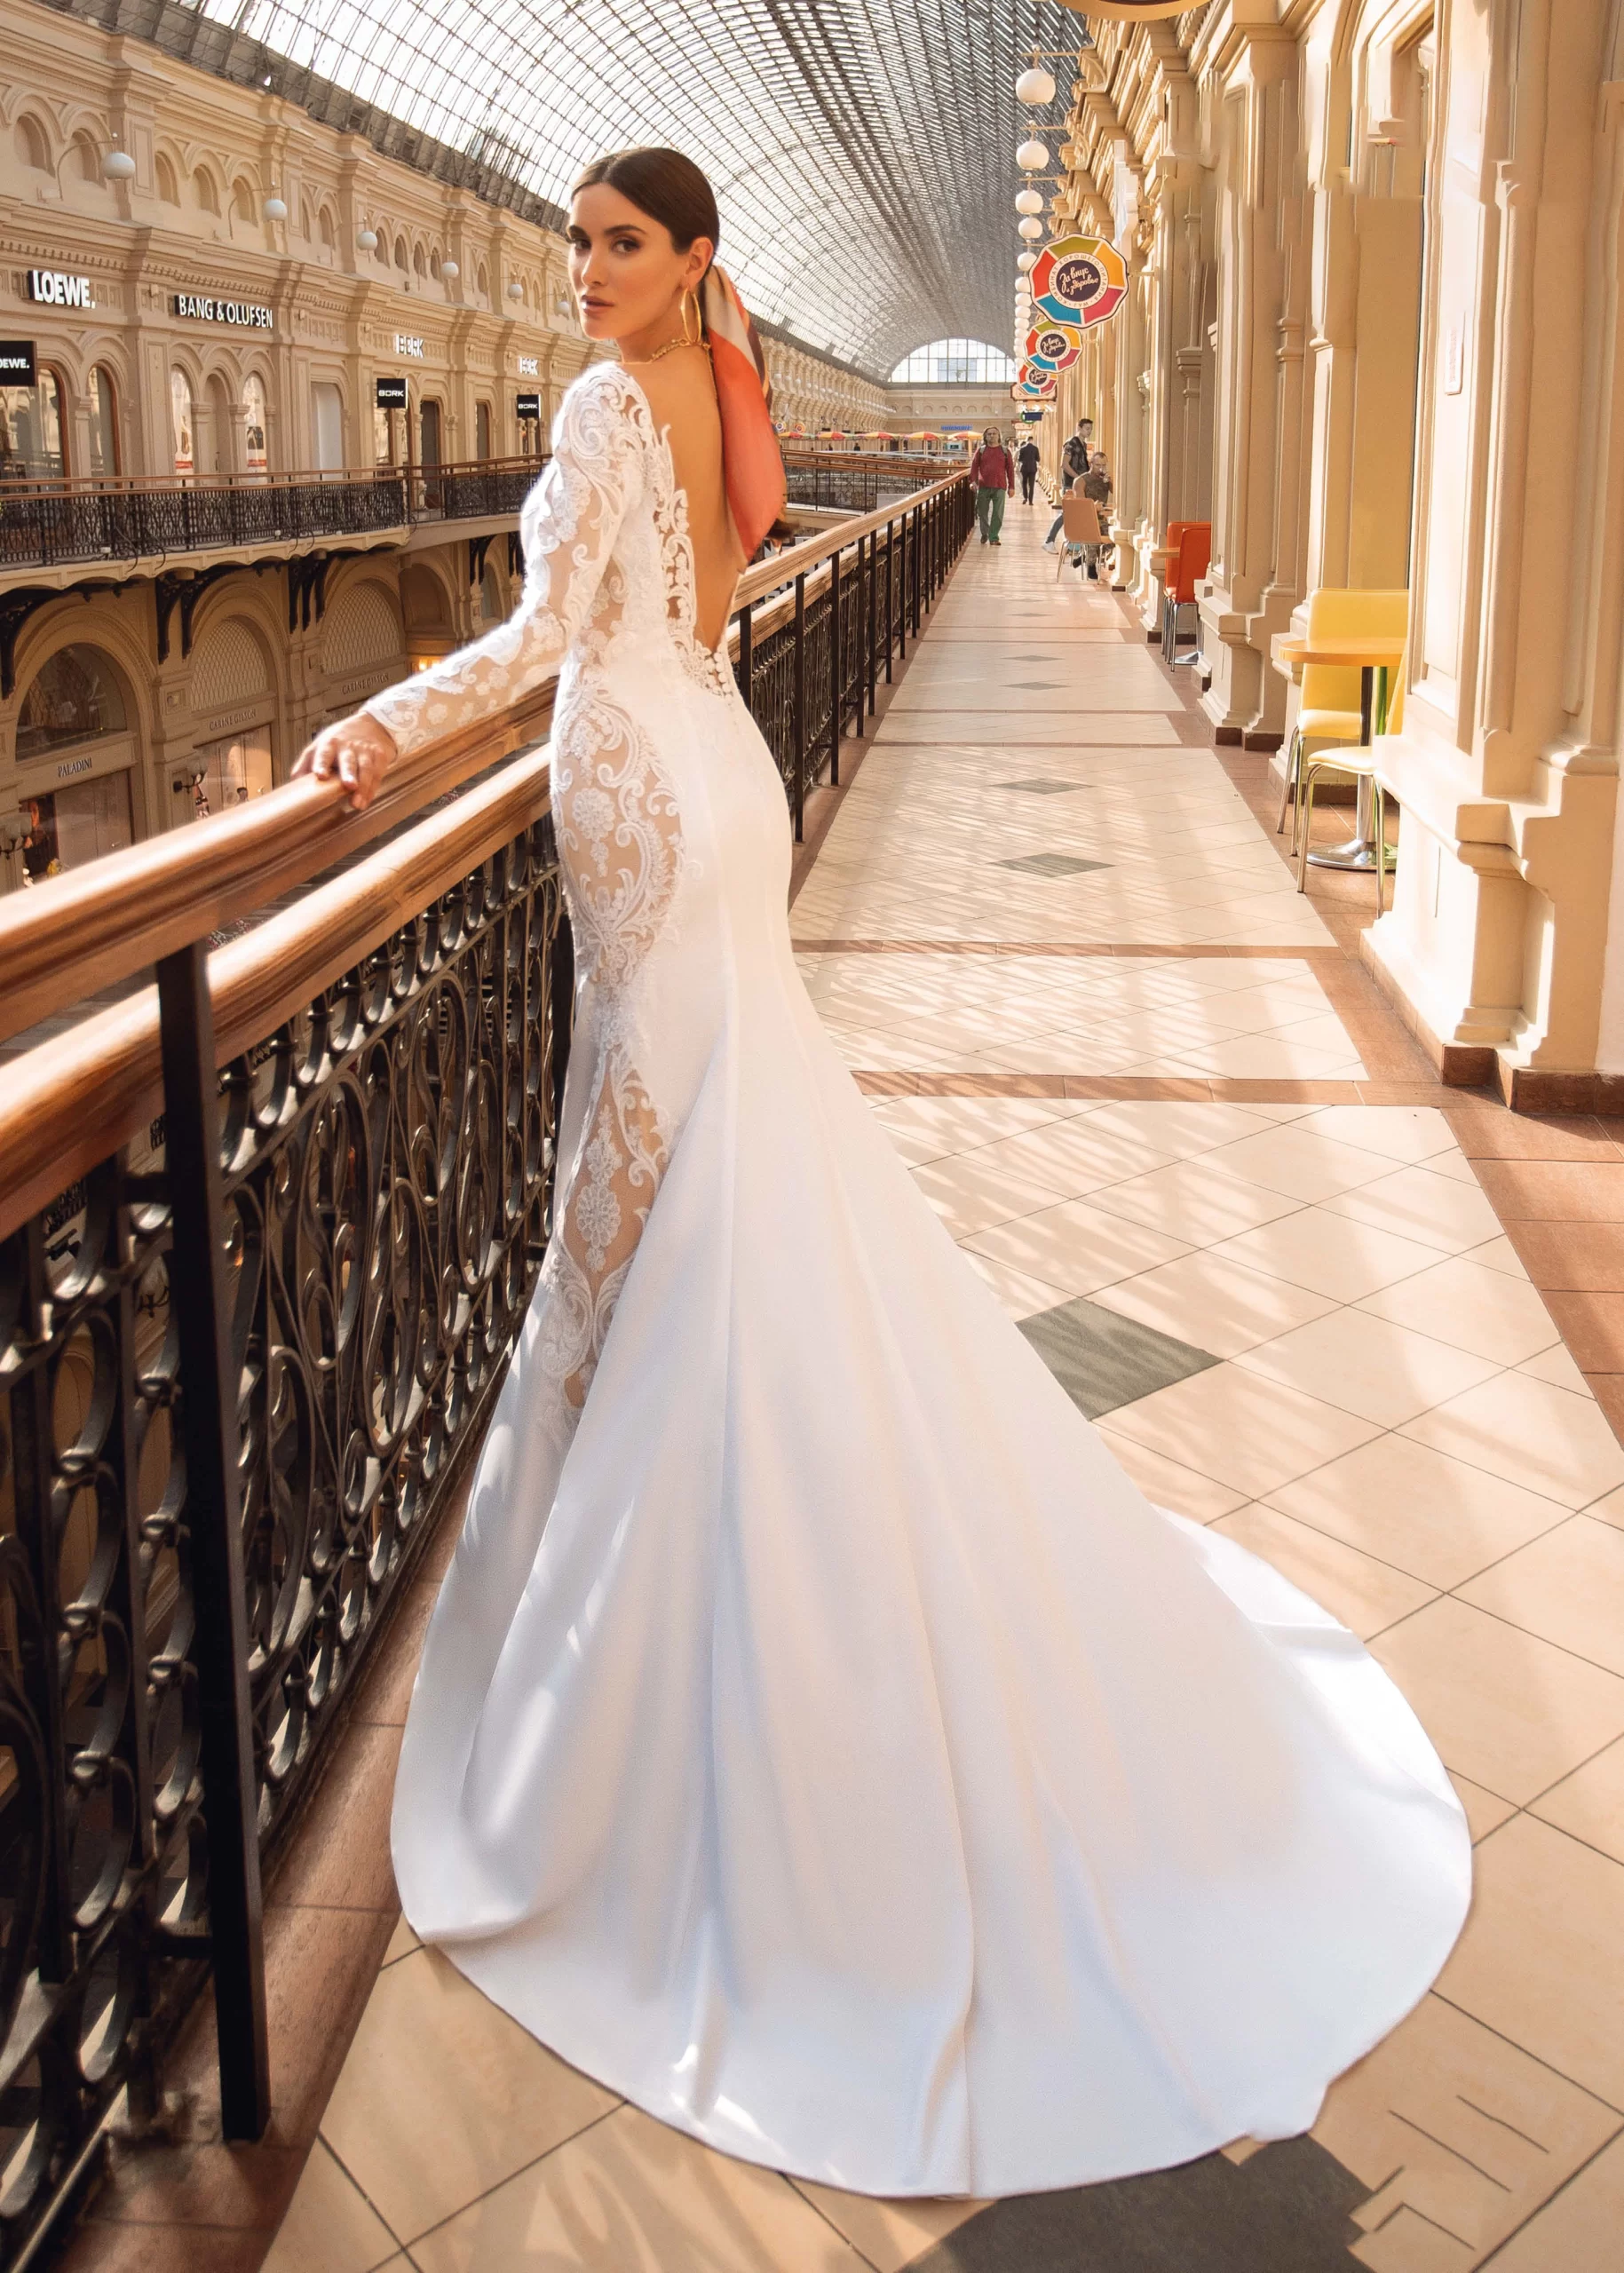 Mulher de cabelos castanhos em um shopping usando um vestido de noiva sereia branco transparente. Ela está segurando a grade e olhando para a câmera.